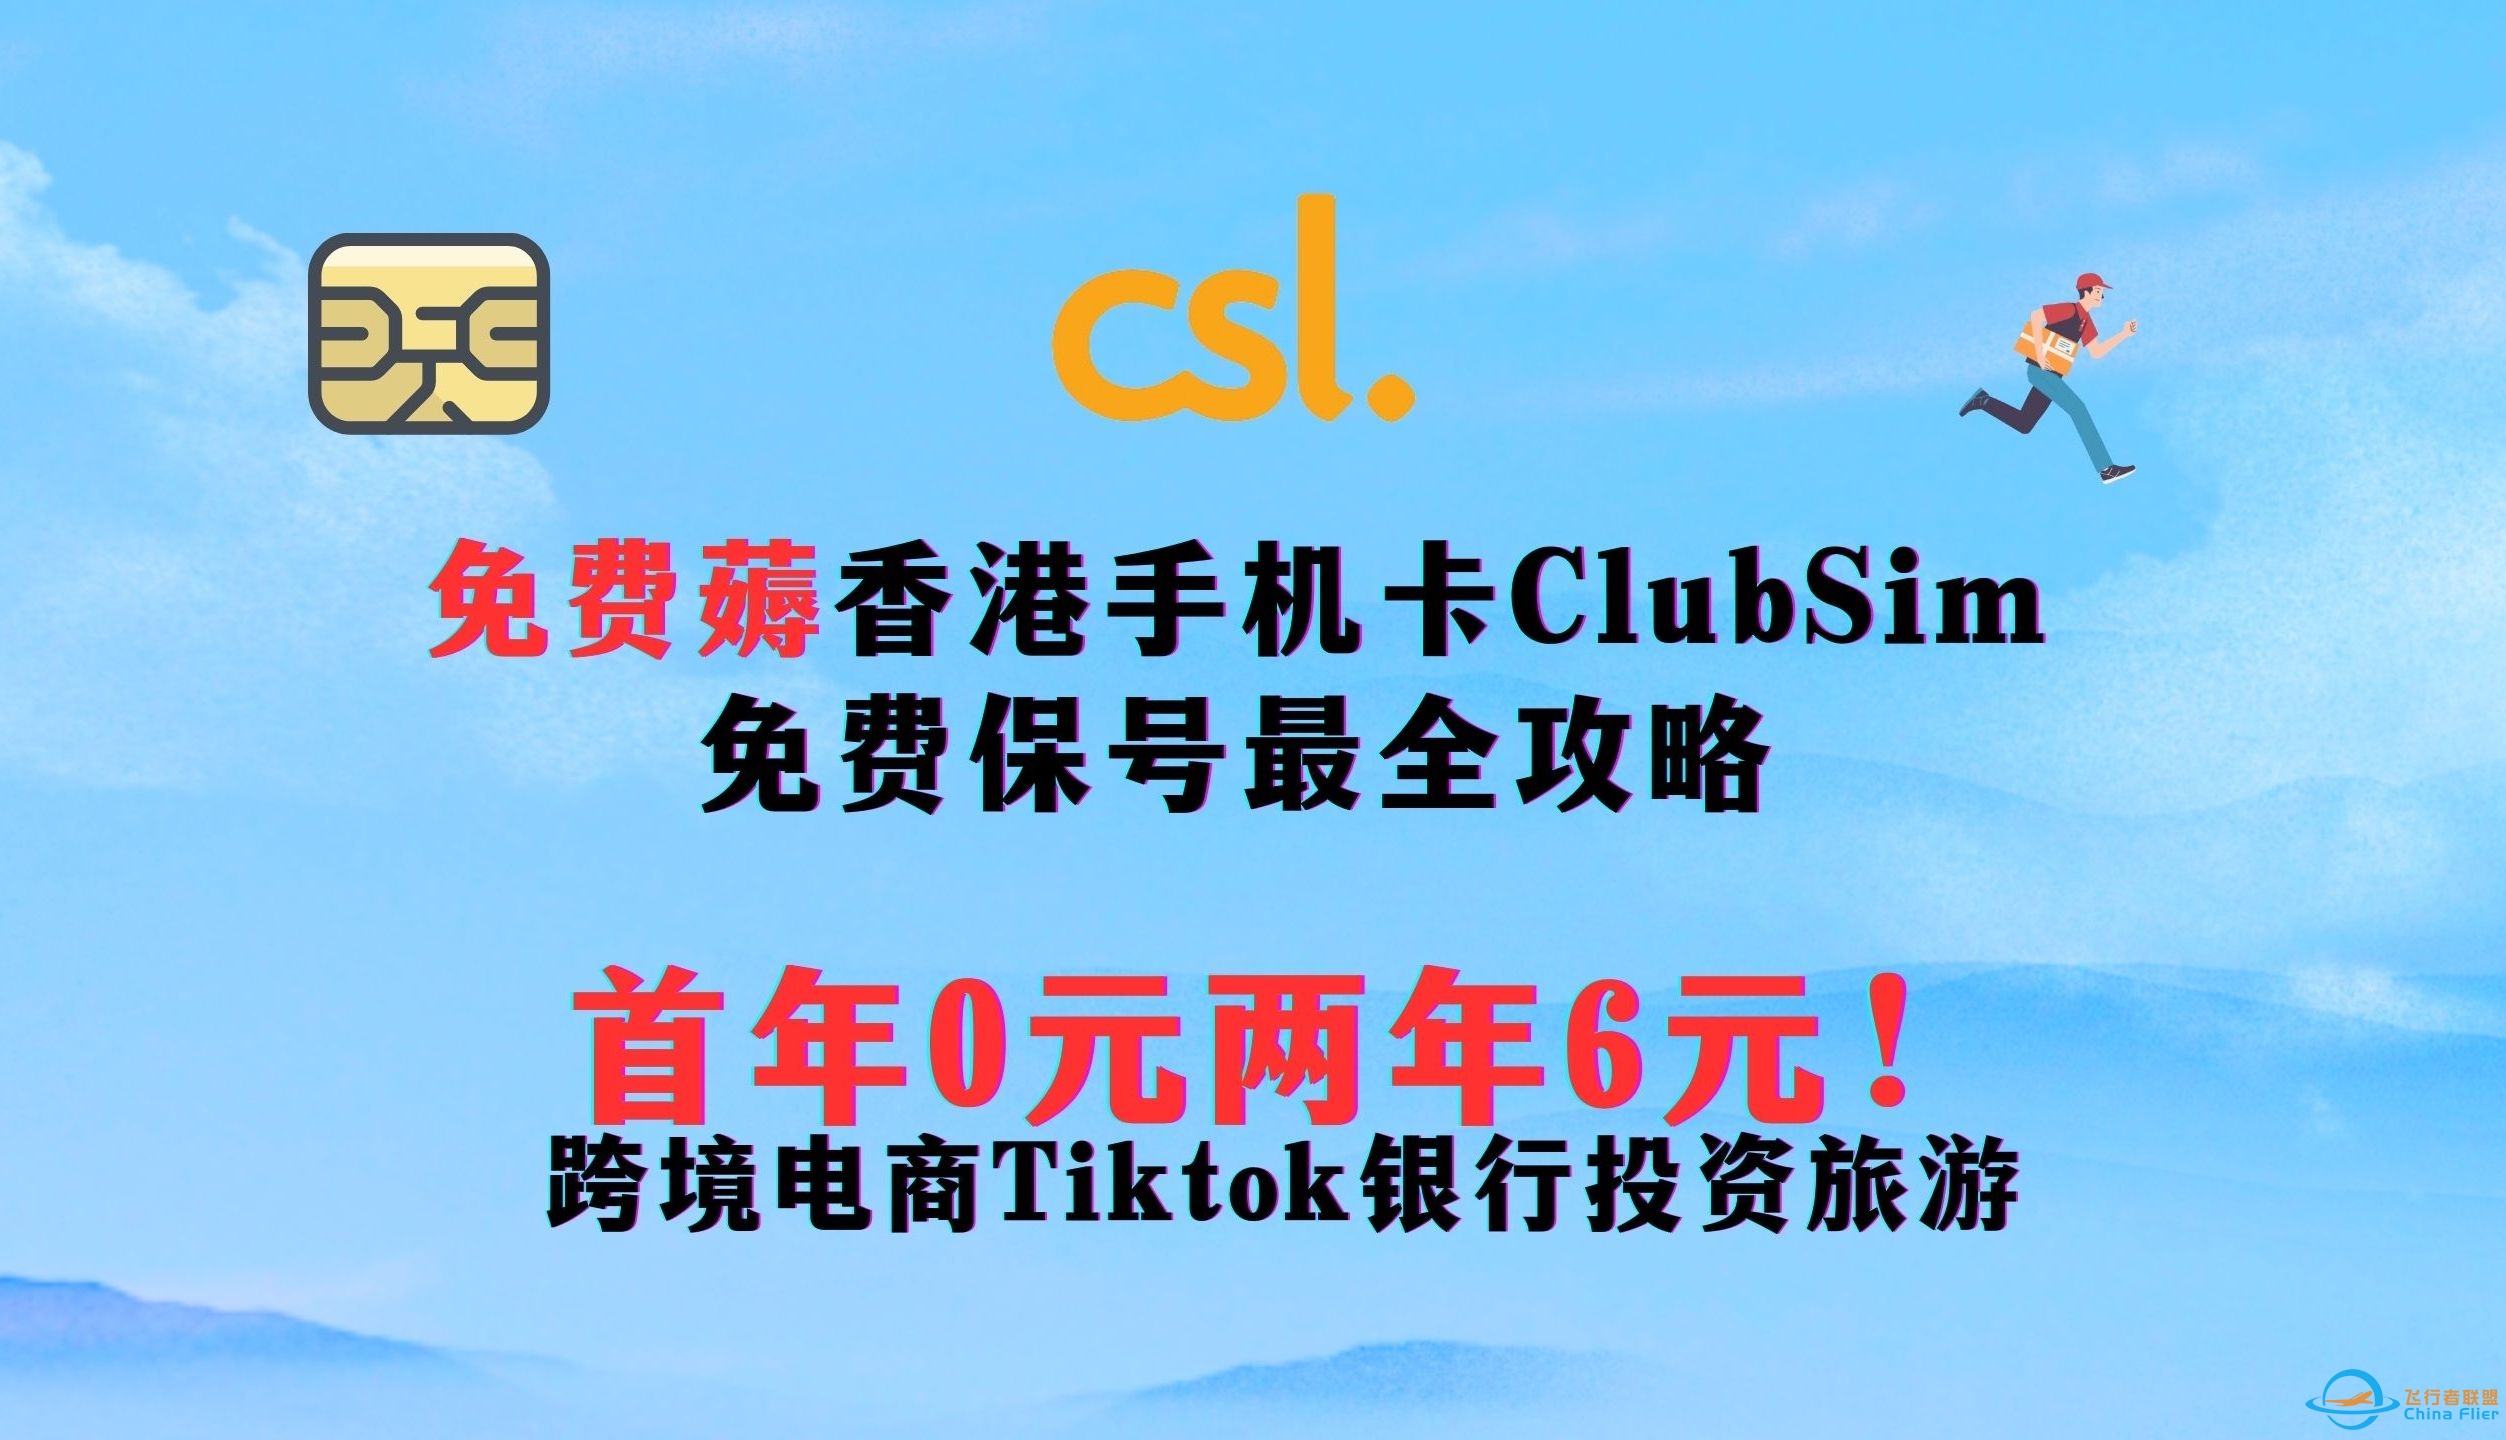 【2024年最新】0元免费薅香港手机卡Club sim 长期免费用！  最全最详细申请保号使用攻略   首年0元两年仅6元 ||跨境电商Tiktok银行投资旅游-2558 